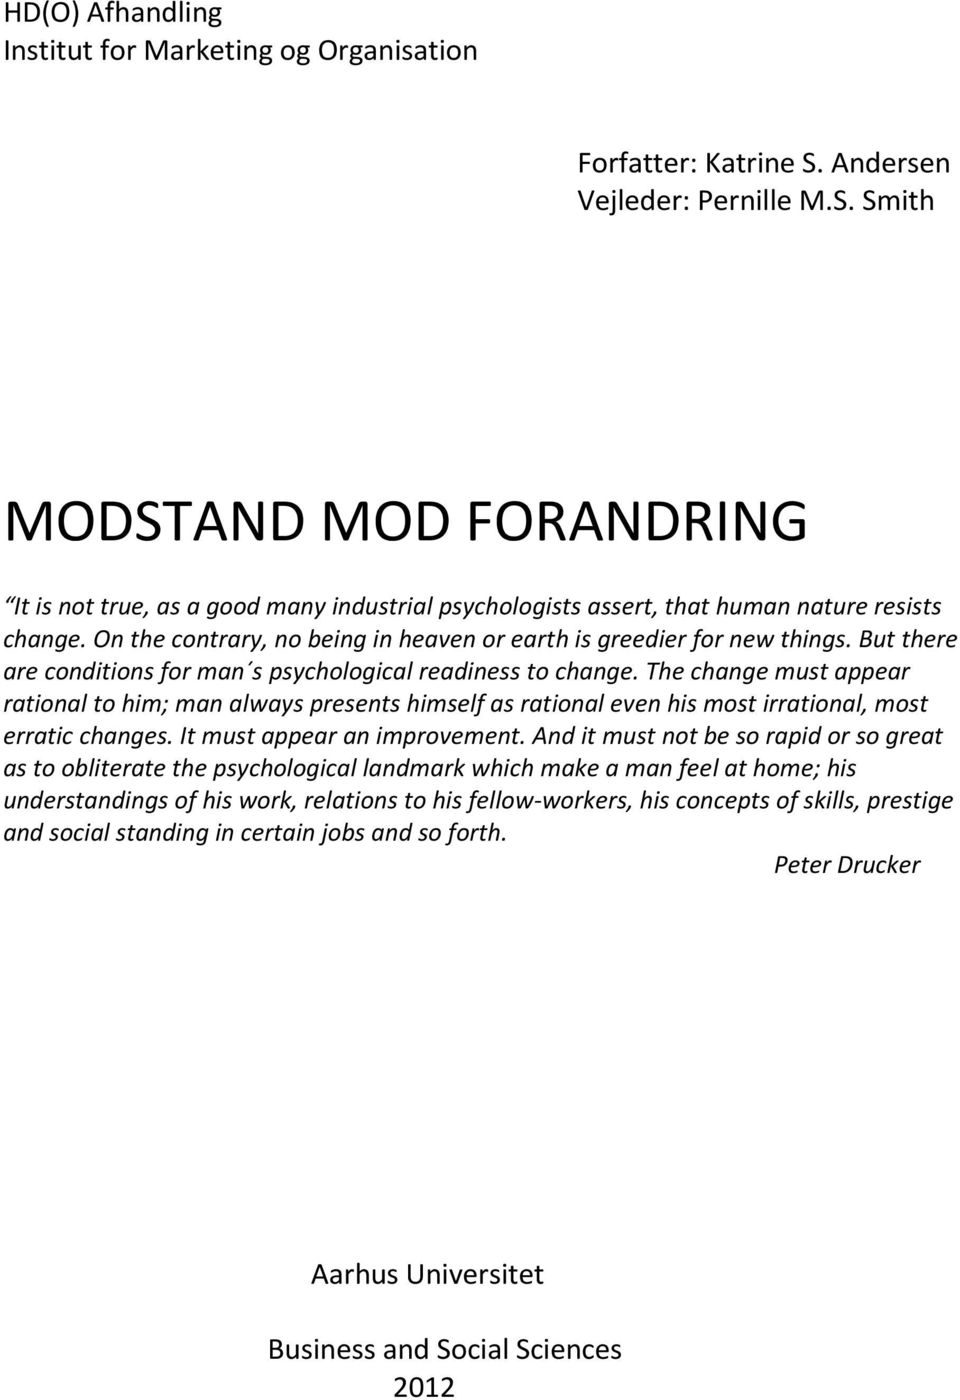 MODSTAND MOD FORANDRING - PDF Gratis download